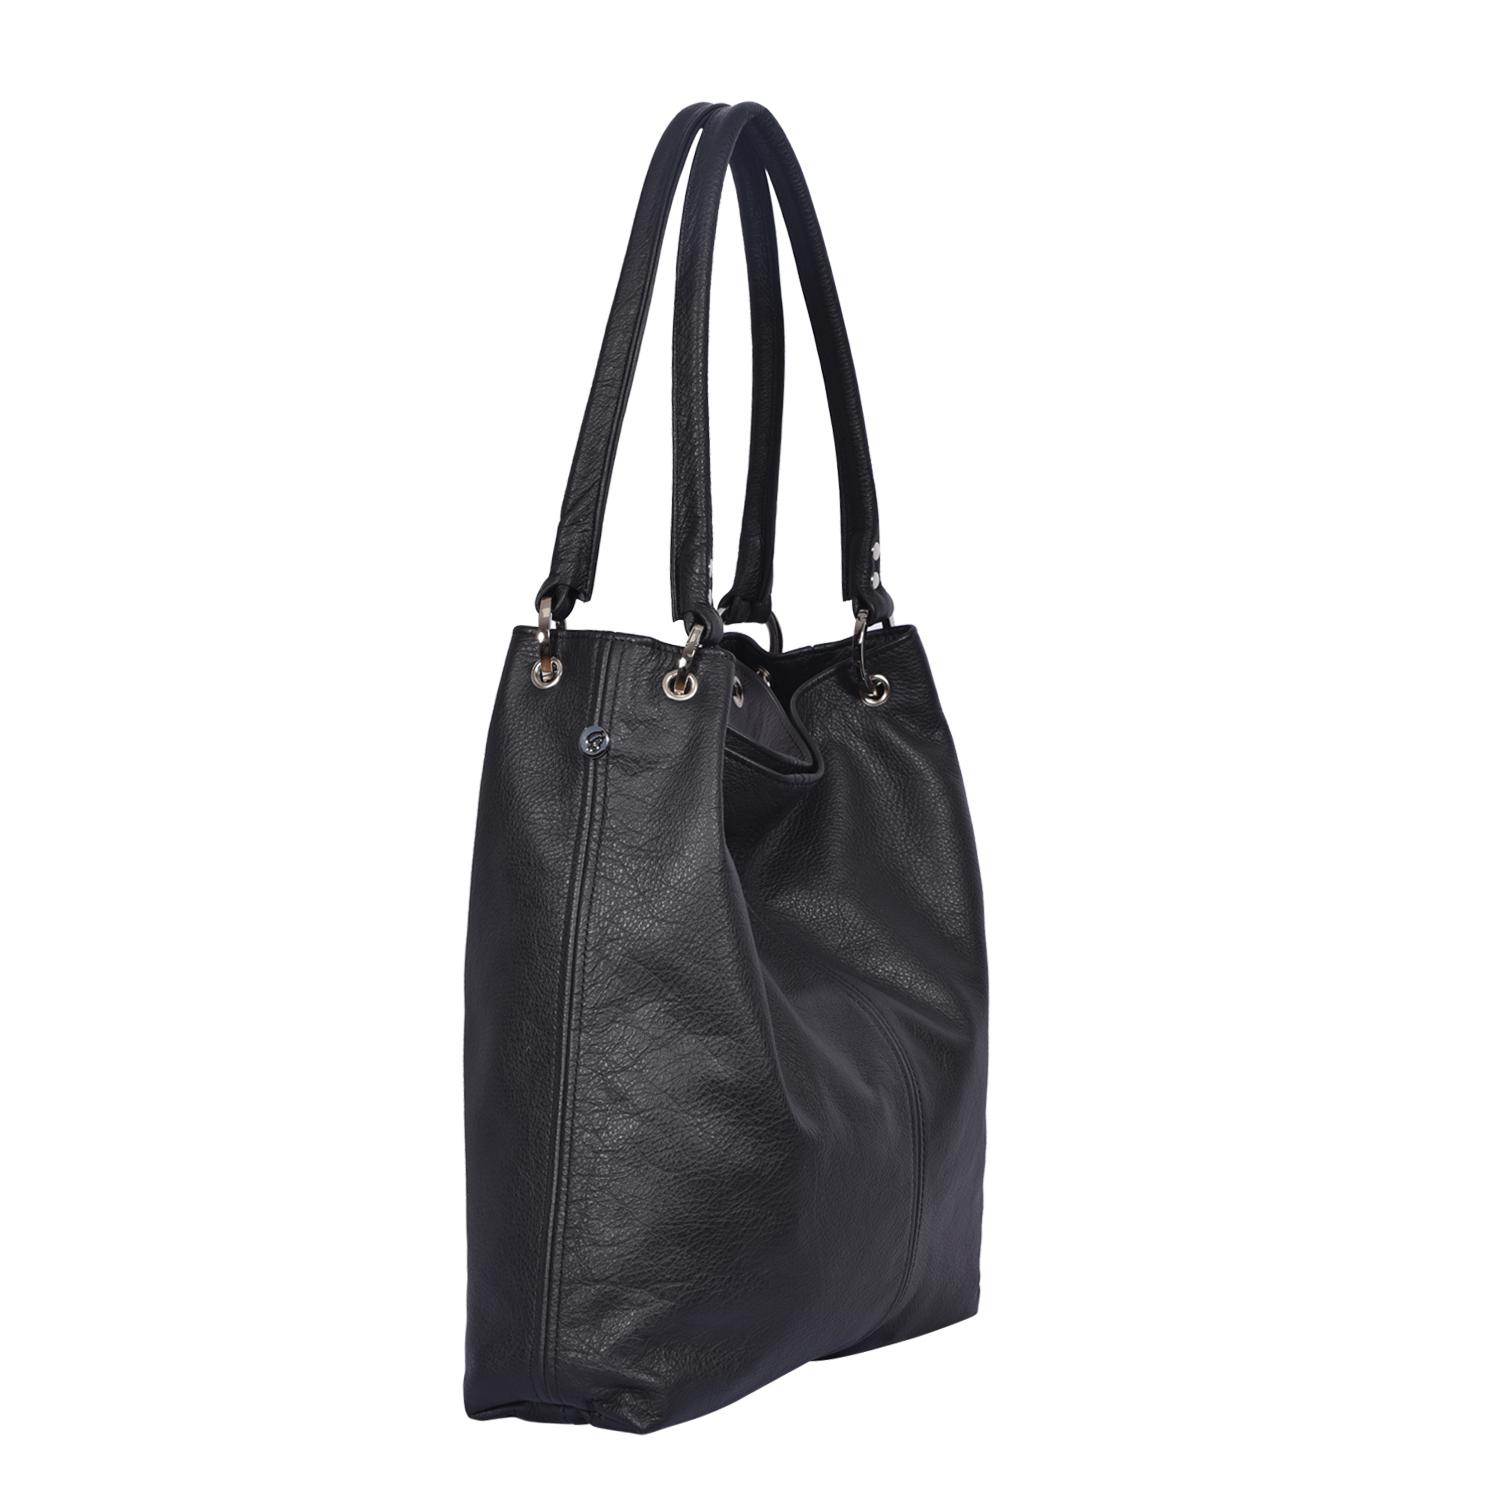 Leather Shoulder Bag Black - Dudley - Side